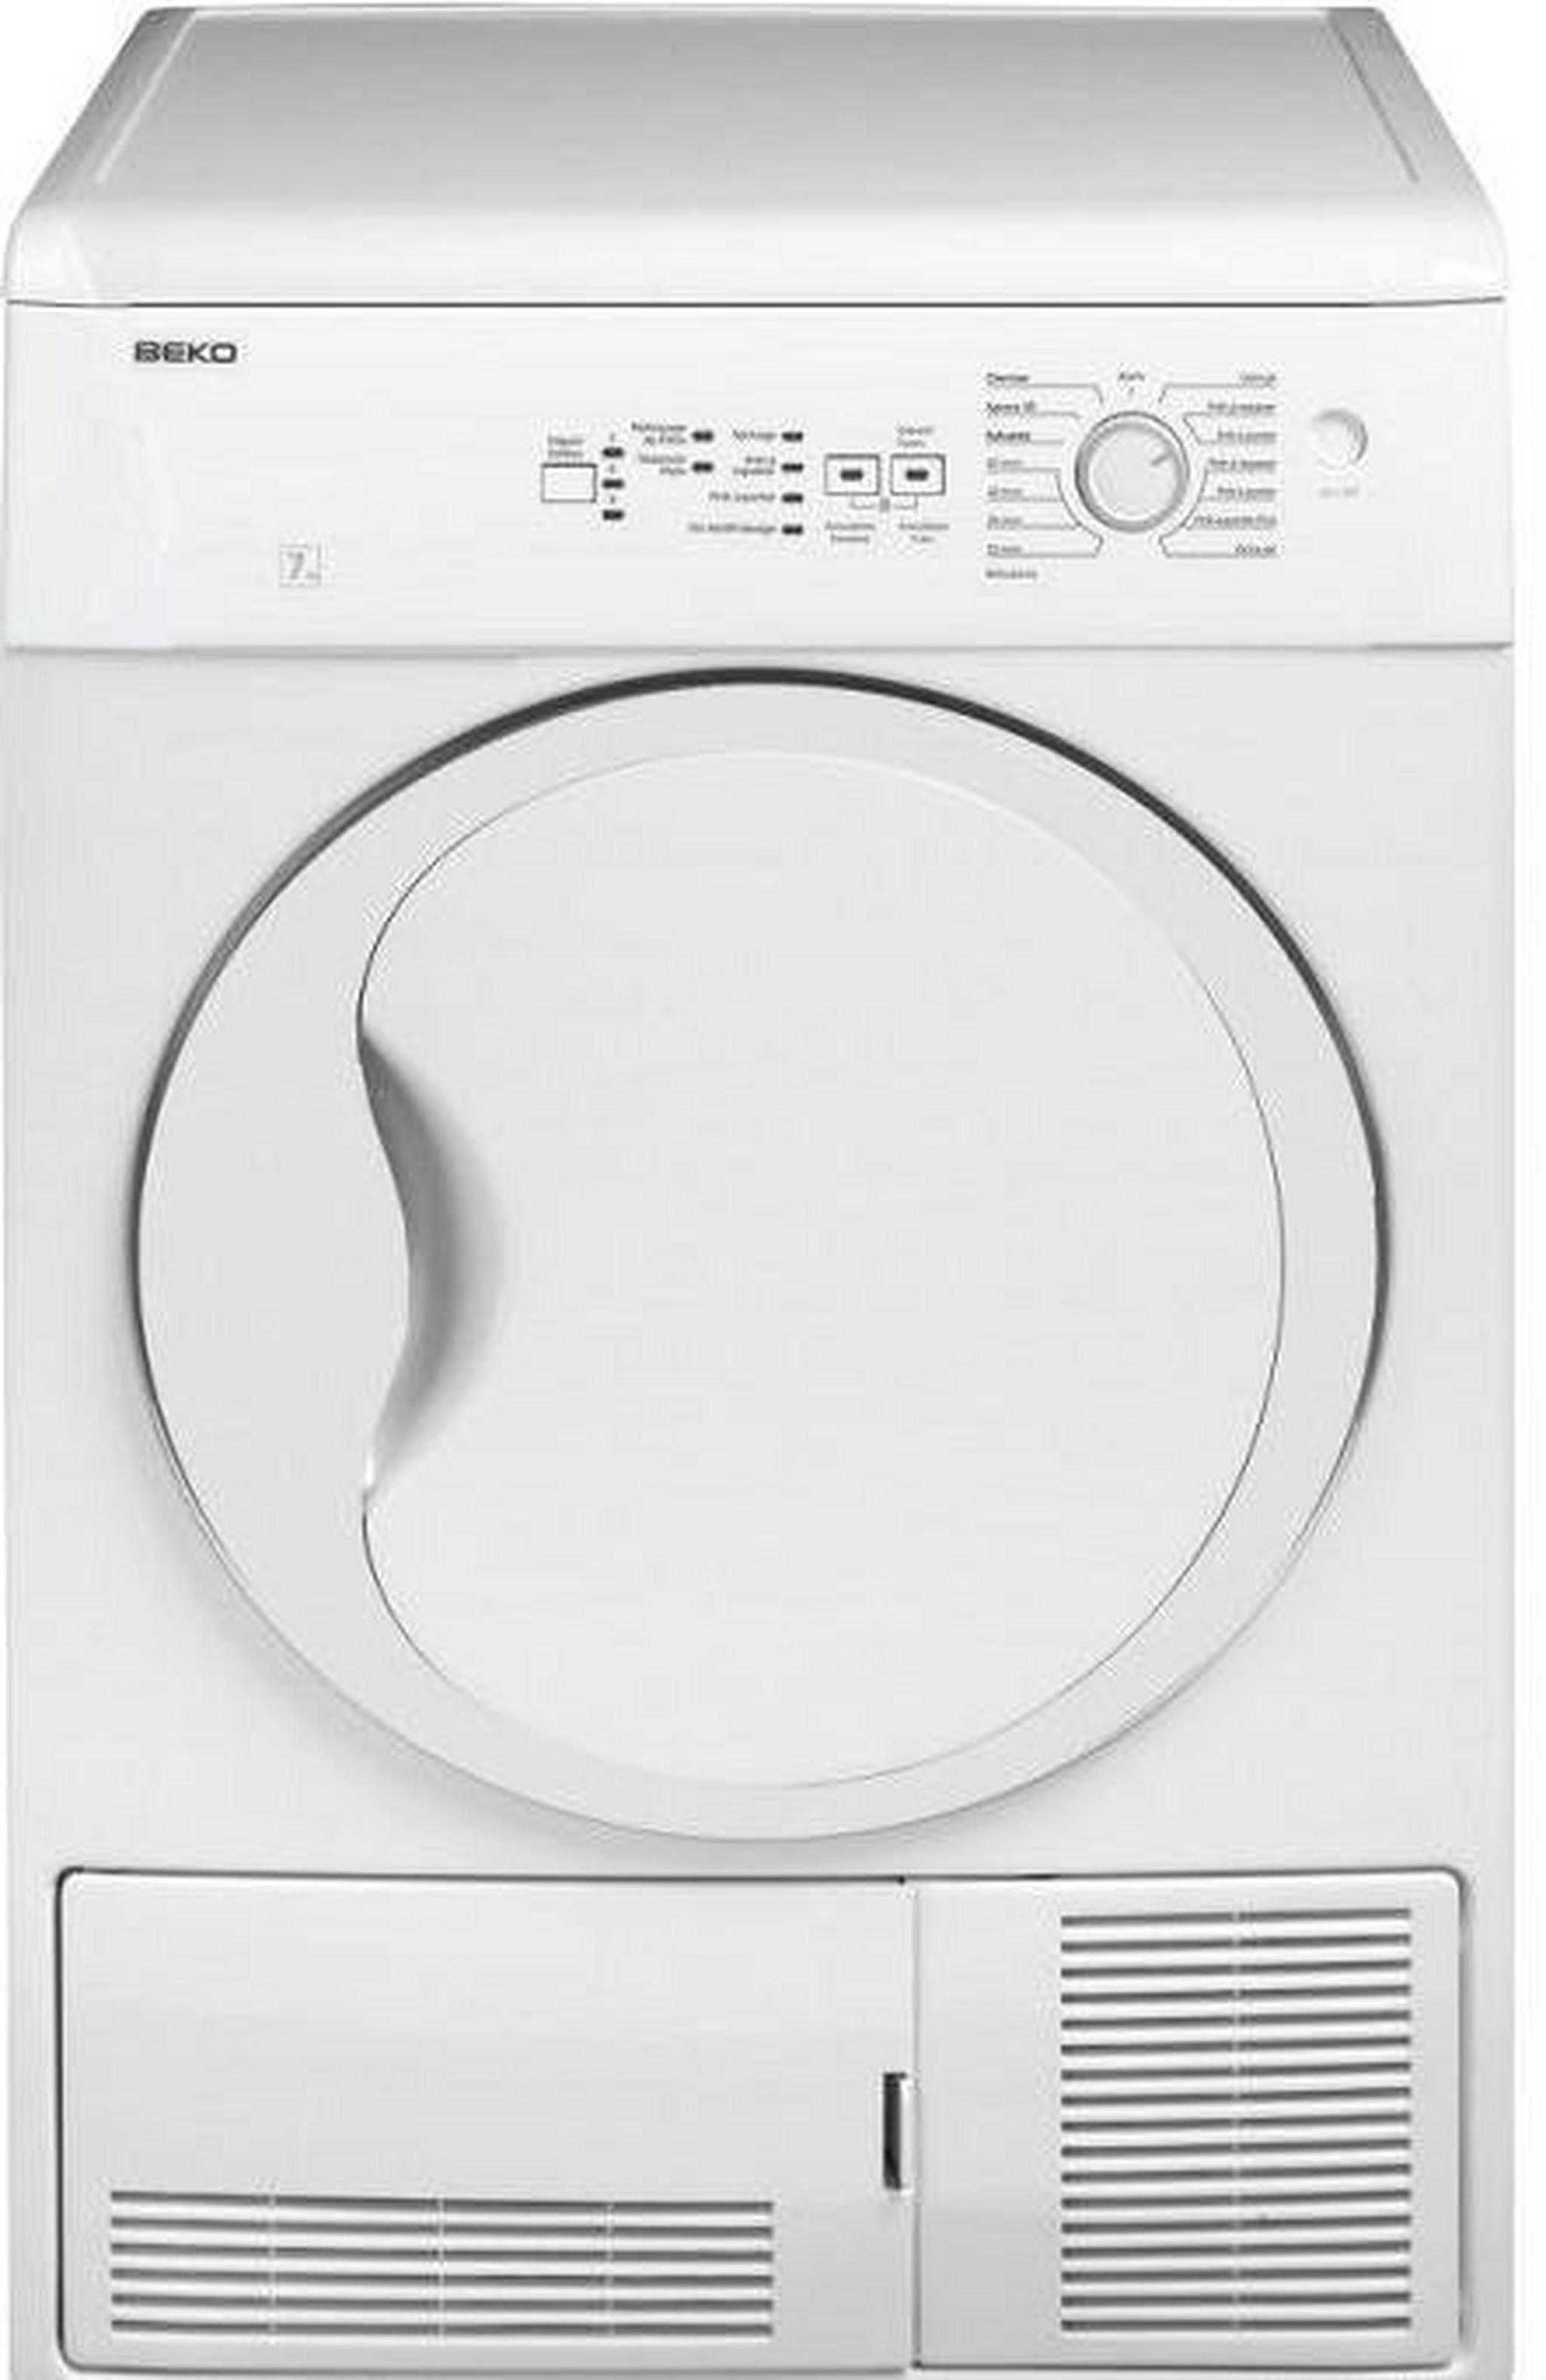 Beko DC7110/30 Front Loader Condenser Dryer 7kg - White